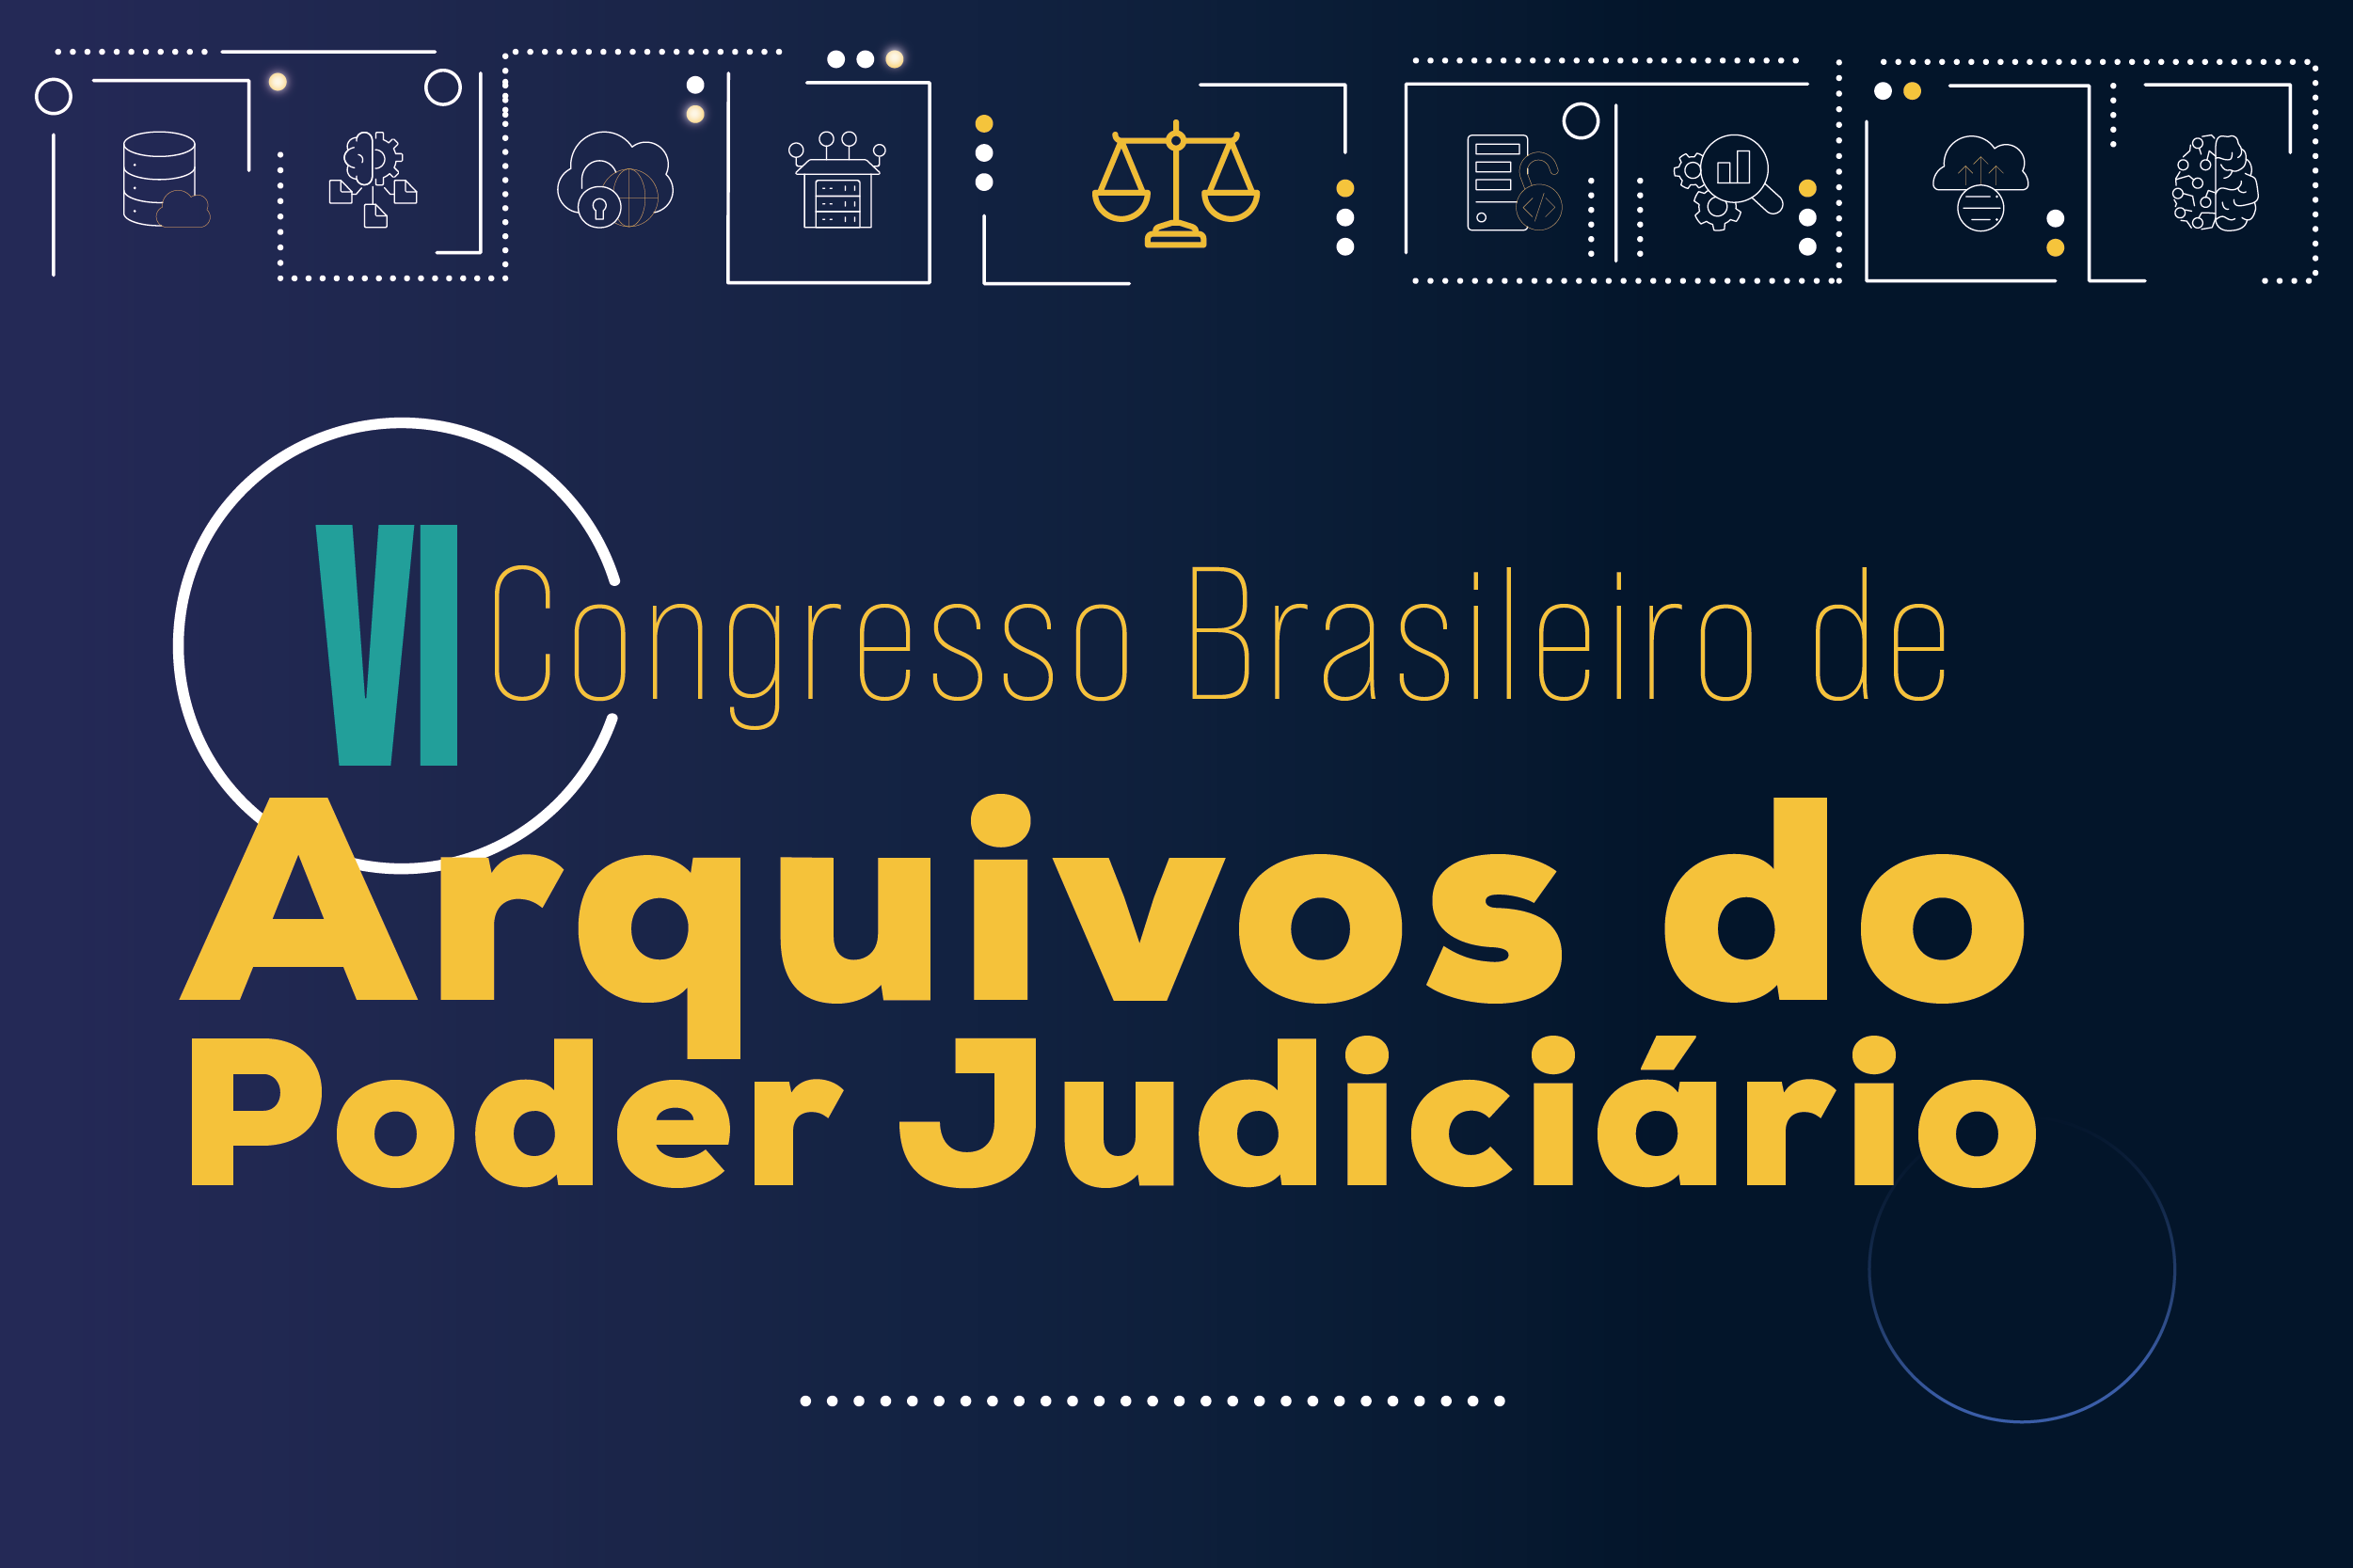 VI Congresso Brasileiro de Arquivos do Porder Judiciário